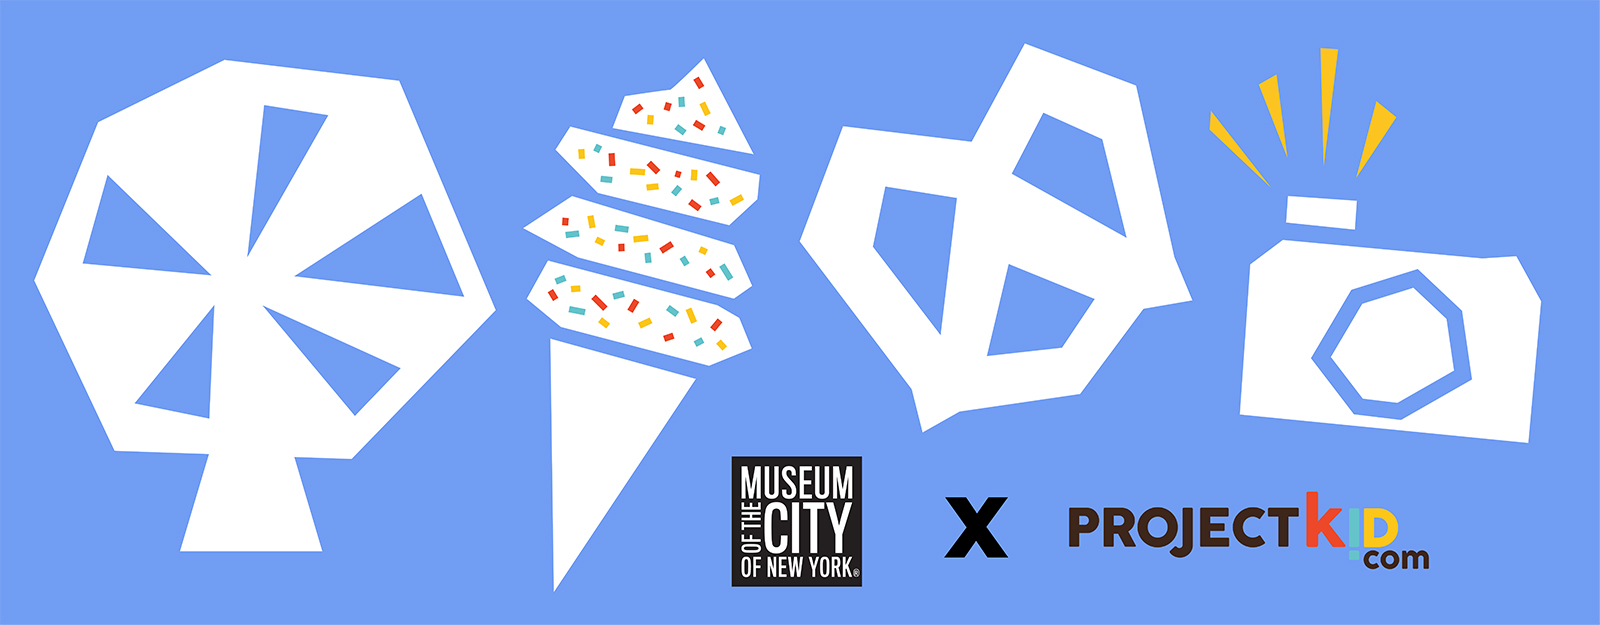 Imágenes de formas (una rueda de la fortuna, un cono de helado, un pretzel y una cámara) que parecen estar recortadas de papel flotando sobre un fondo azul claro, con los logotipos del Museo de la Ciudad de Nueva York y el Proyecto Kid.